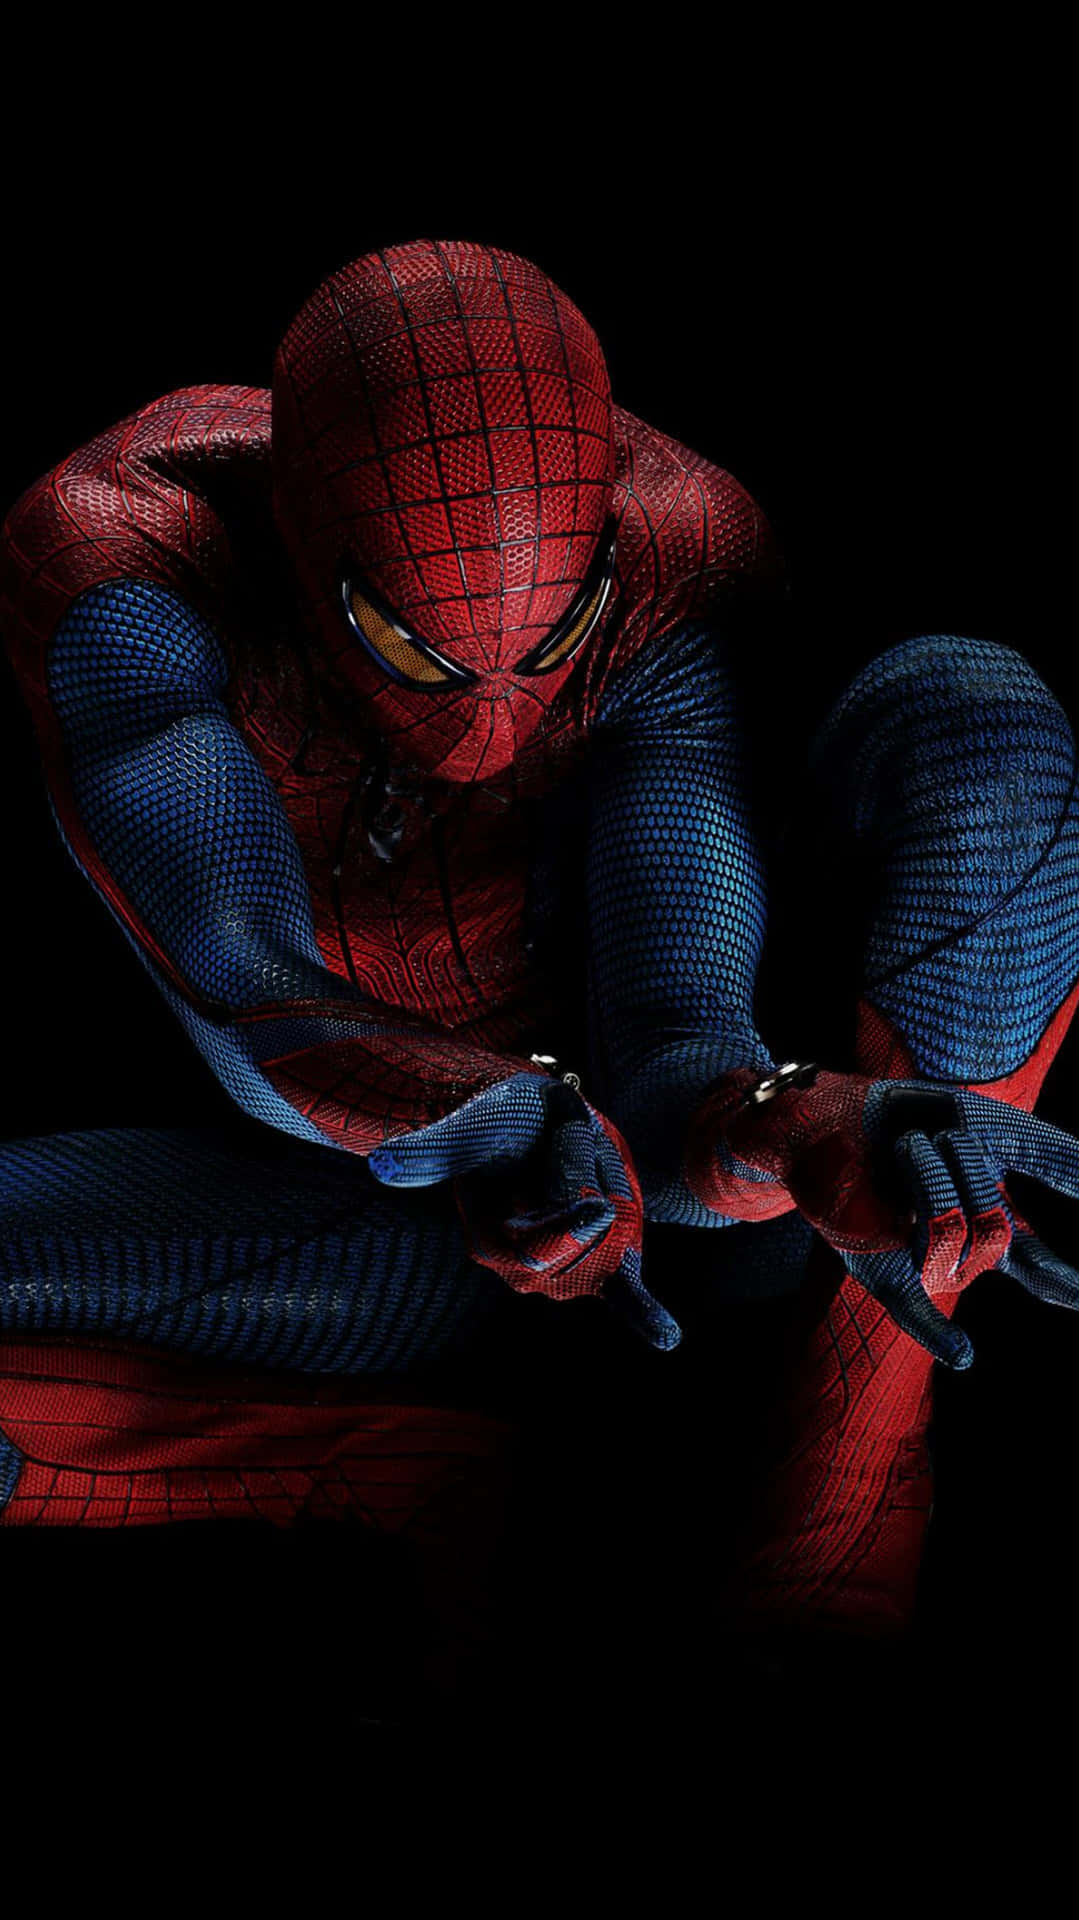 Upptäckspänningen Med Den Fantastiska Spider-man Med Iphones Bakgrundsbild. Wallpaper